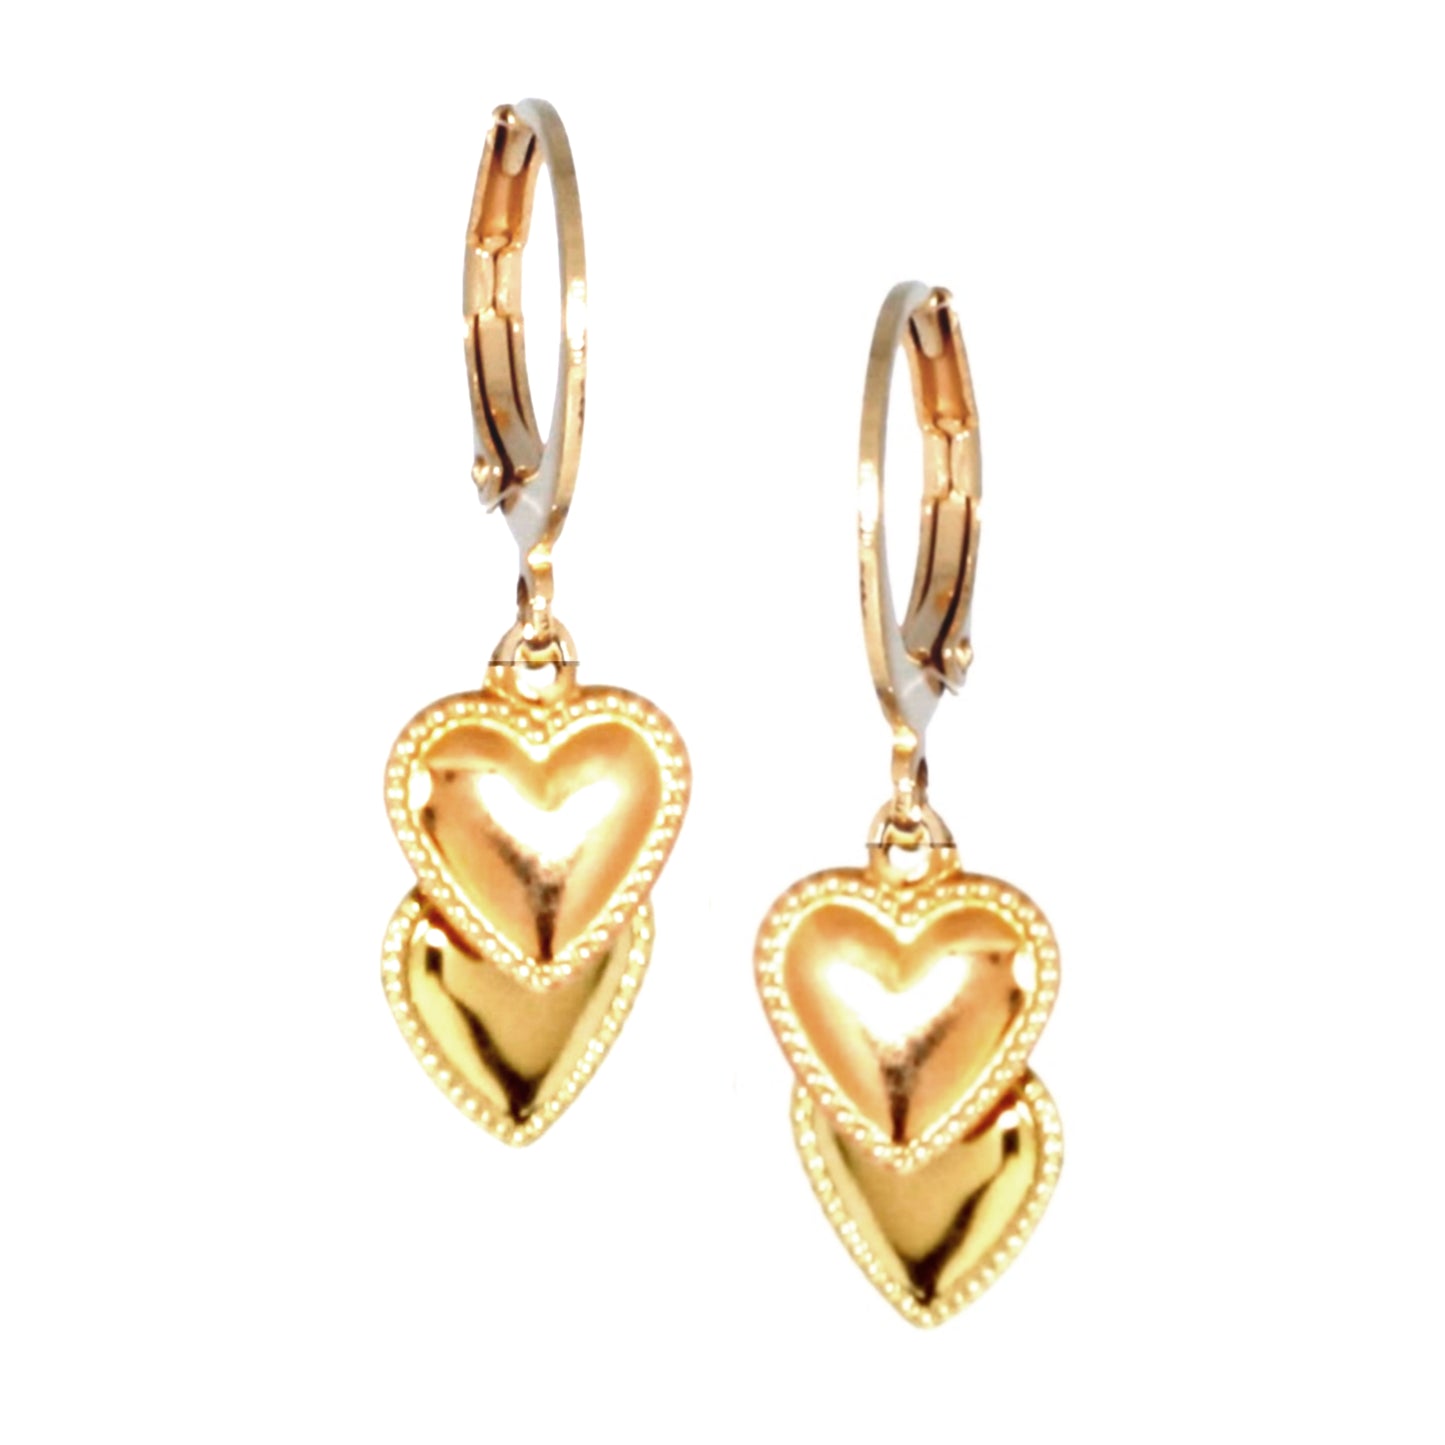 Surgical Steel Double Heart Earring - HK Jewels